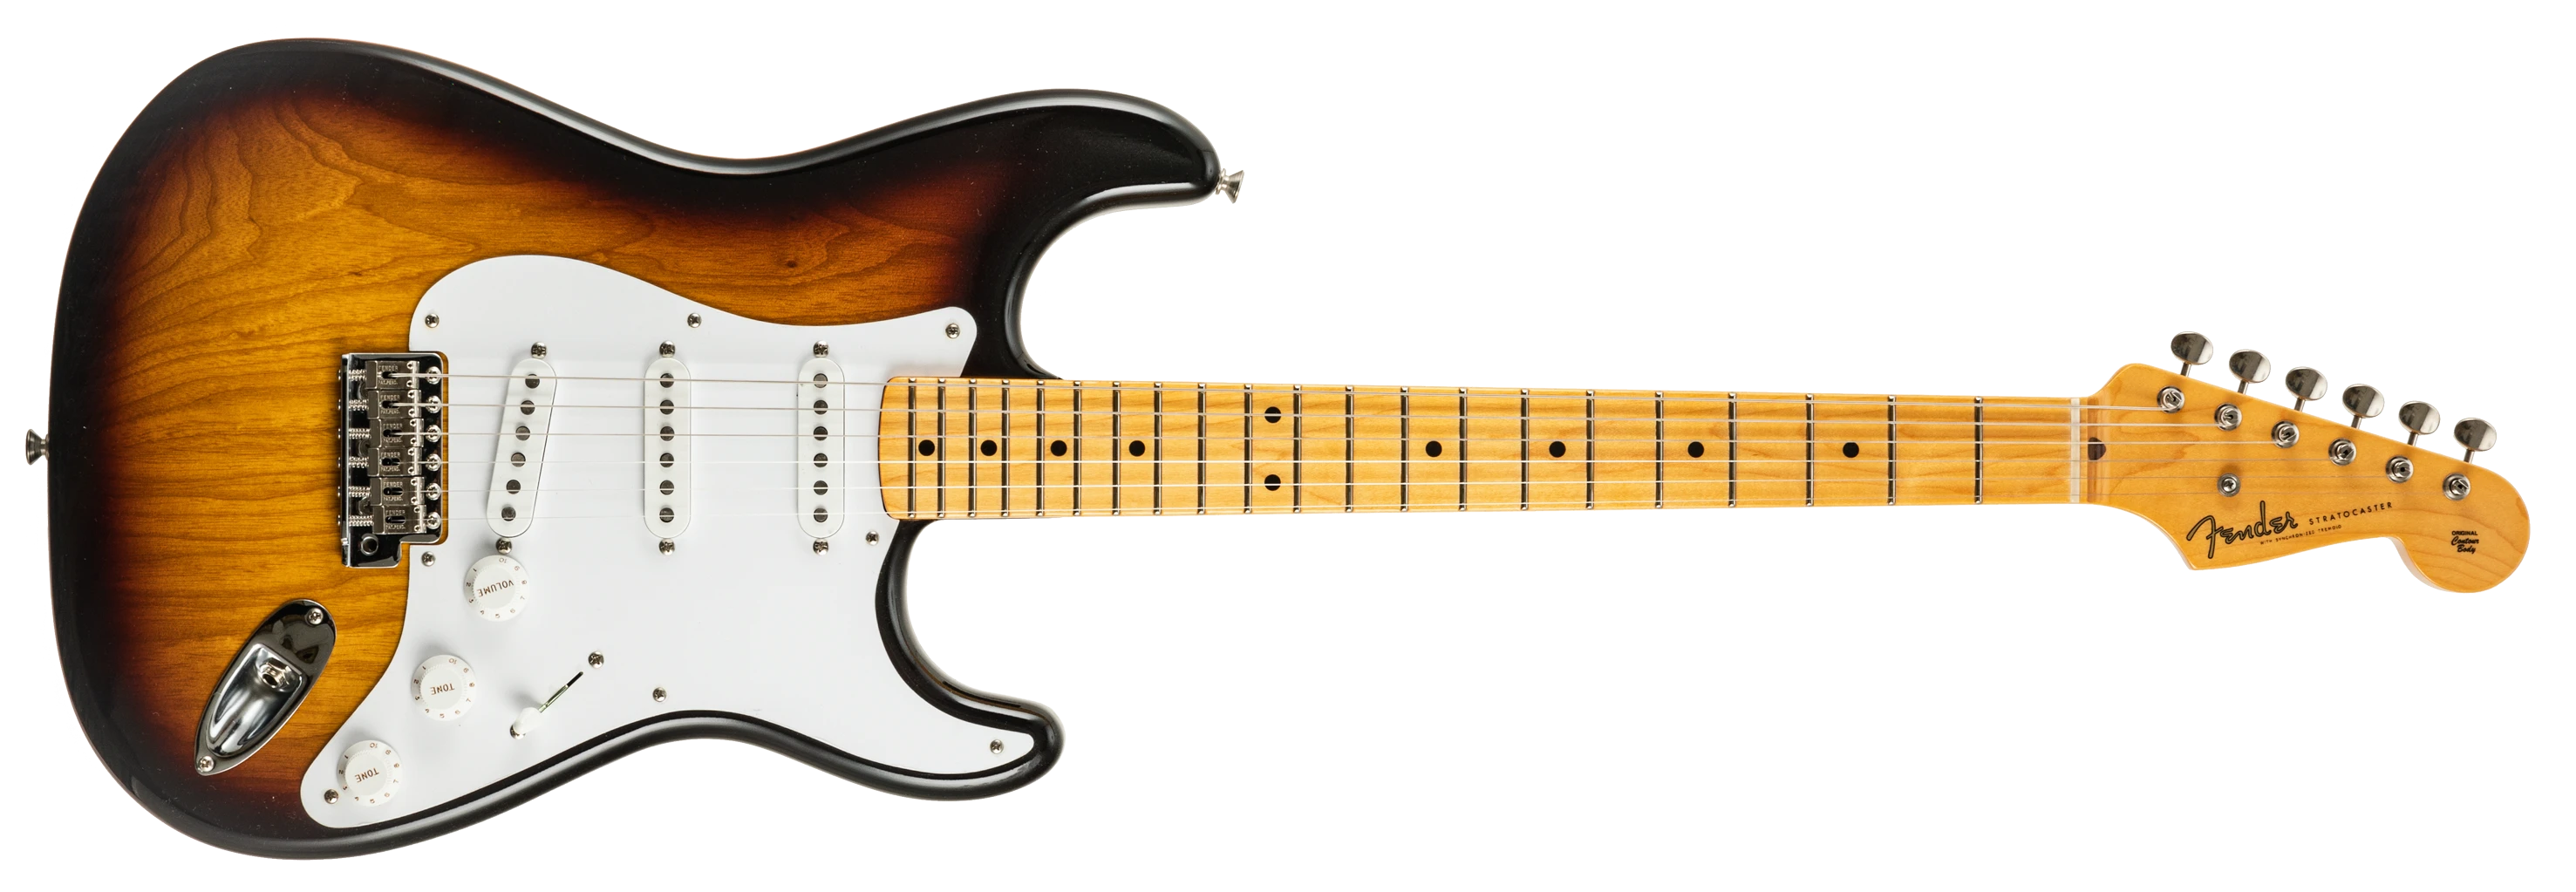 Fender Strat 1955 Stratocaster Timecapsule 2TSB/mn 